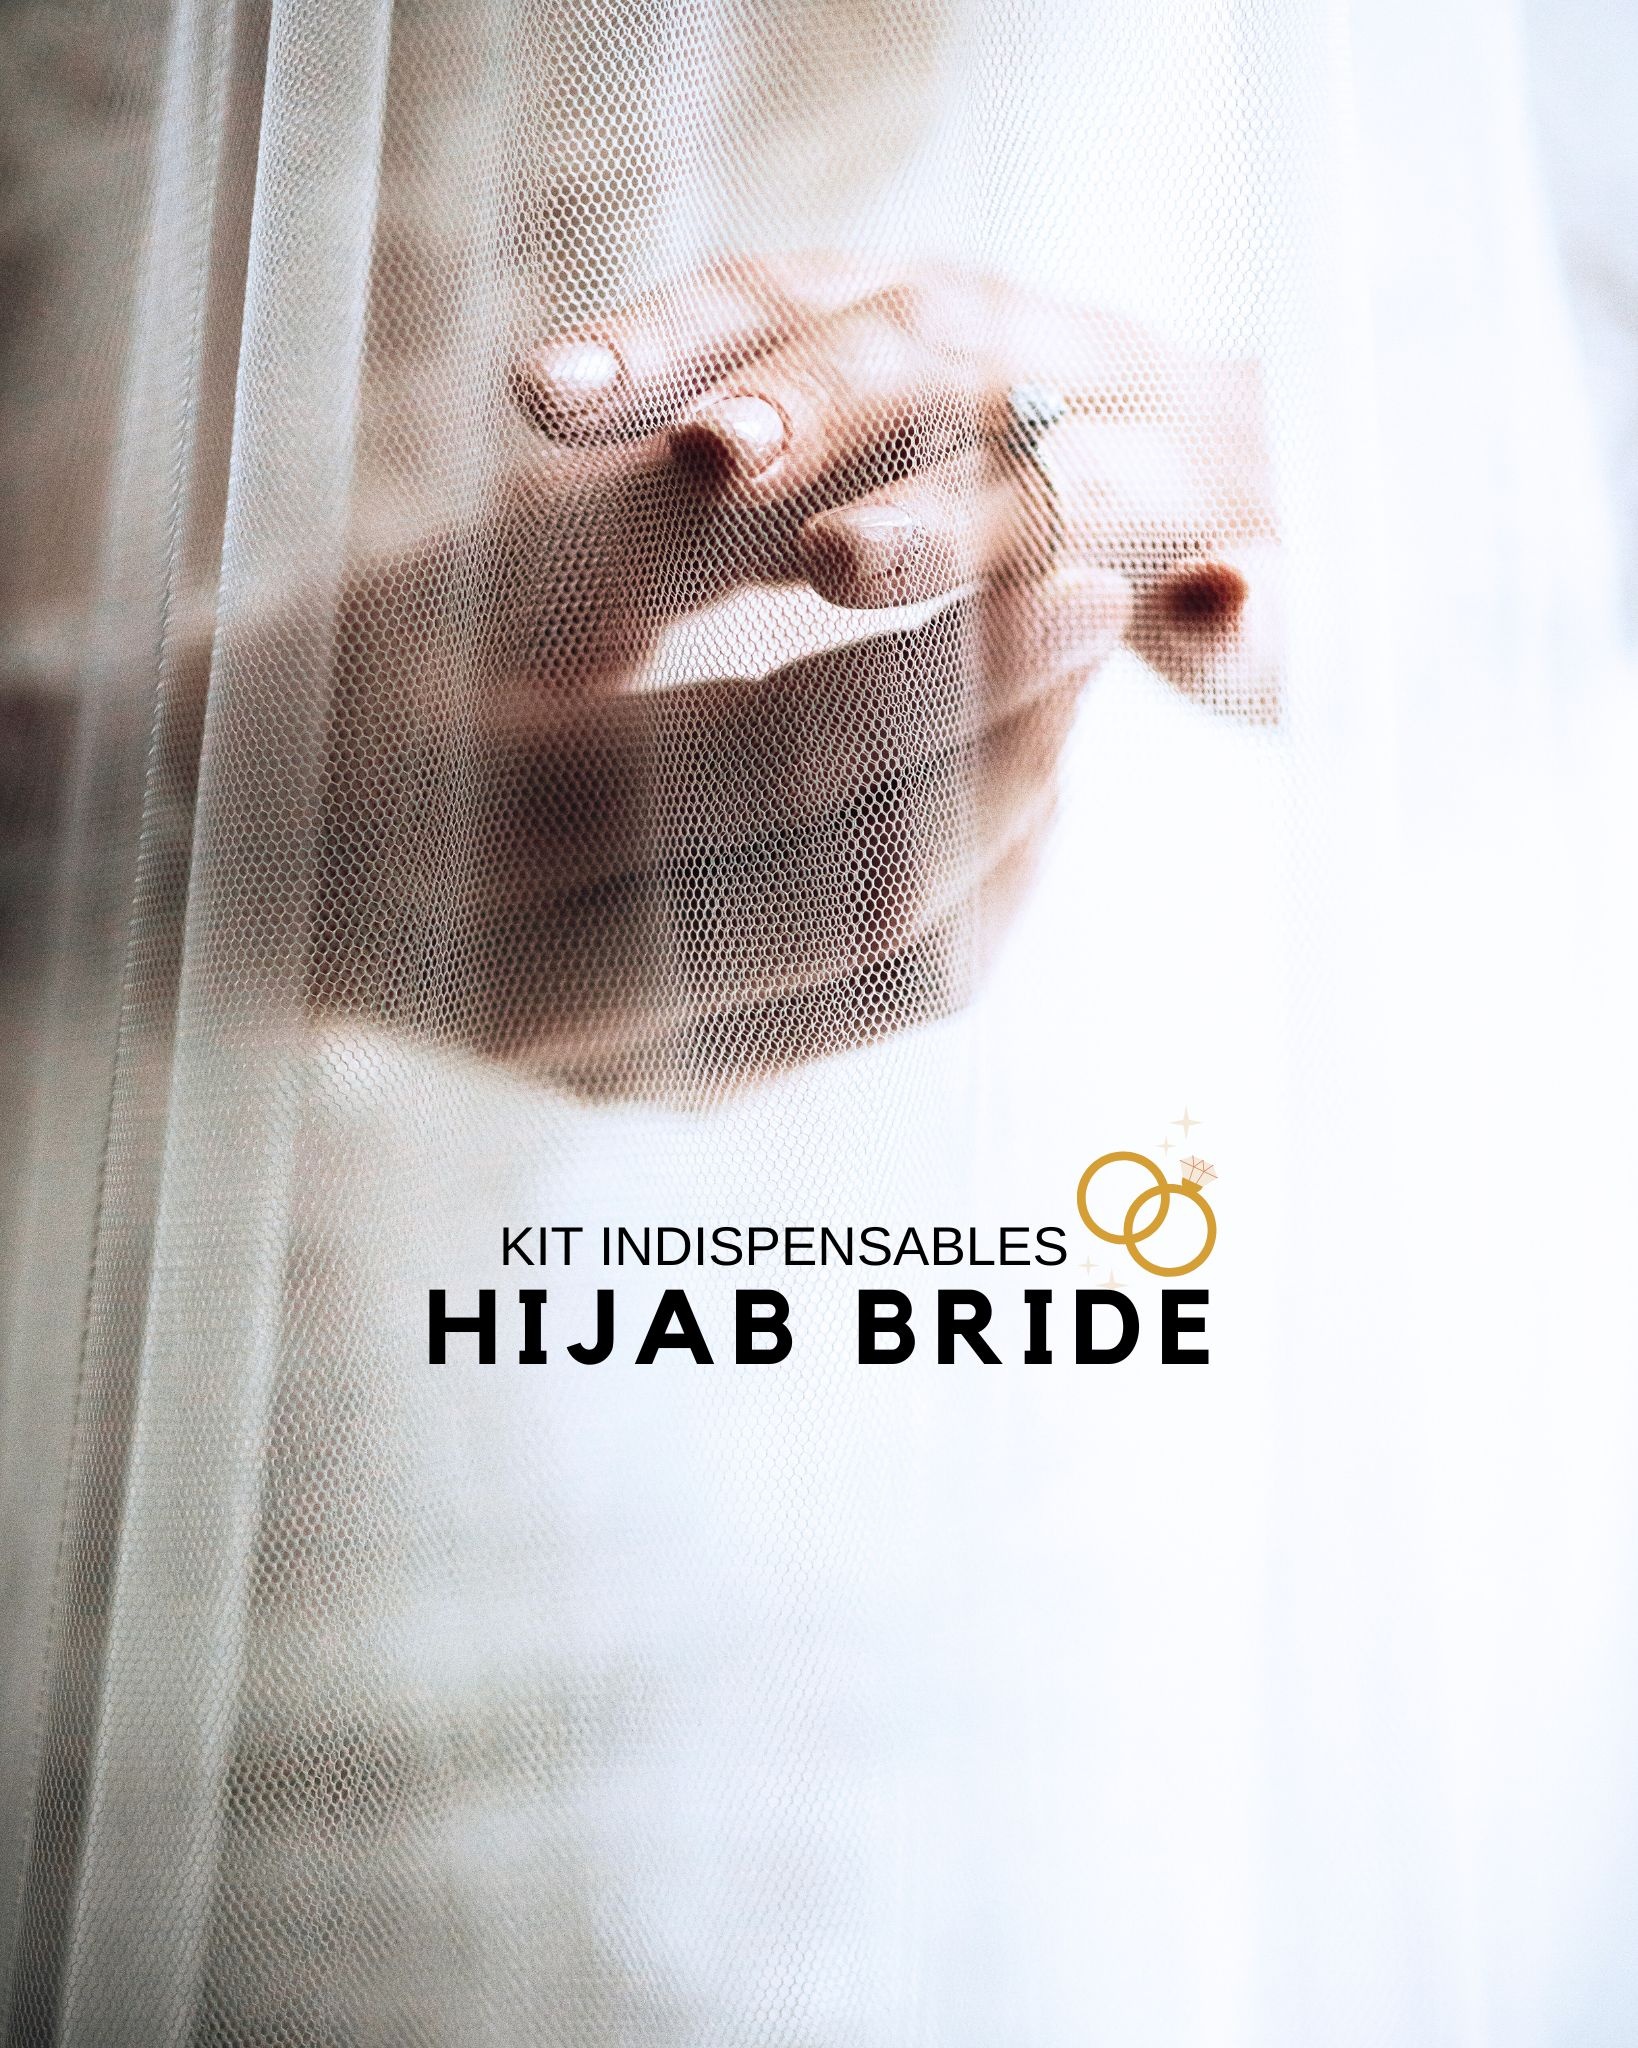 Kit de Mariée Voilée - Toutes les Indispensables pour une Pose de Hijab Belle et Pudique le Jour J (Modèle de Hijab  : Crêpe de Luxe - Couleur du KIT  : Ivoire / Blanc cassé)